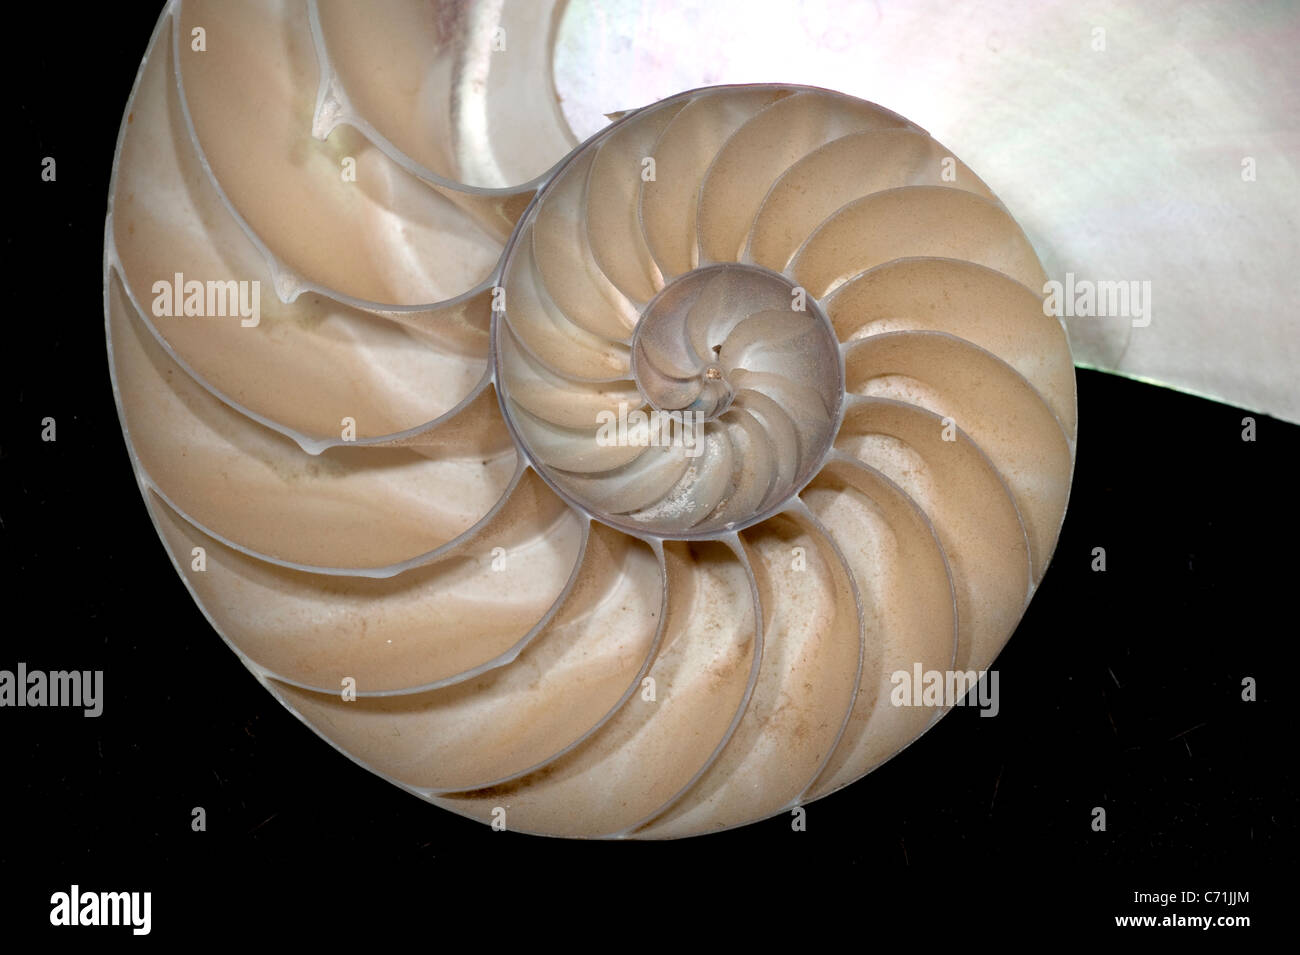 Chambered Nautilus shell Stock Photo